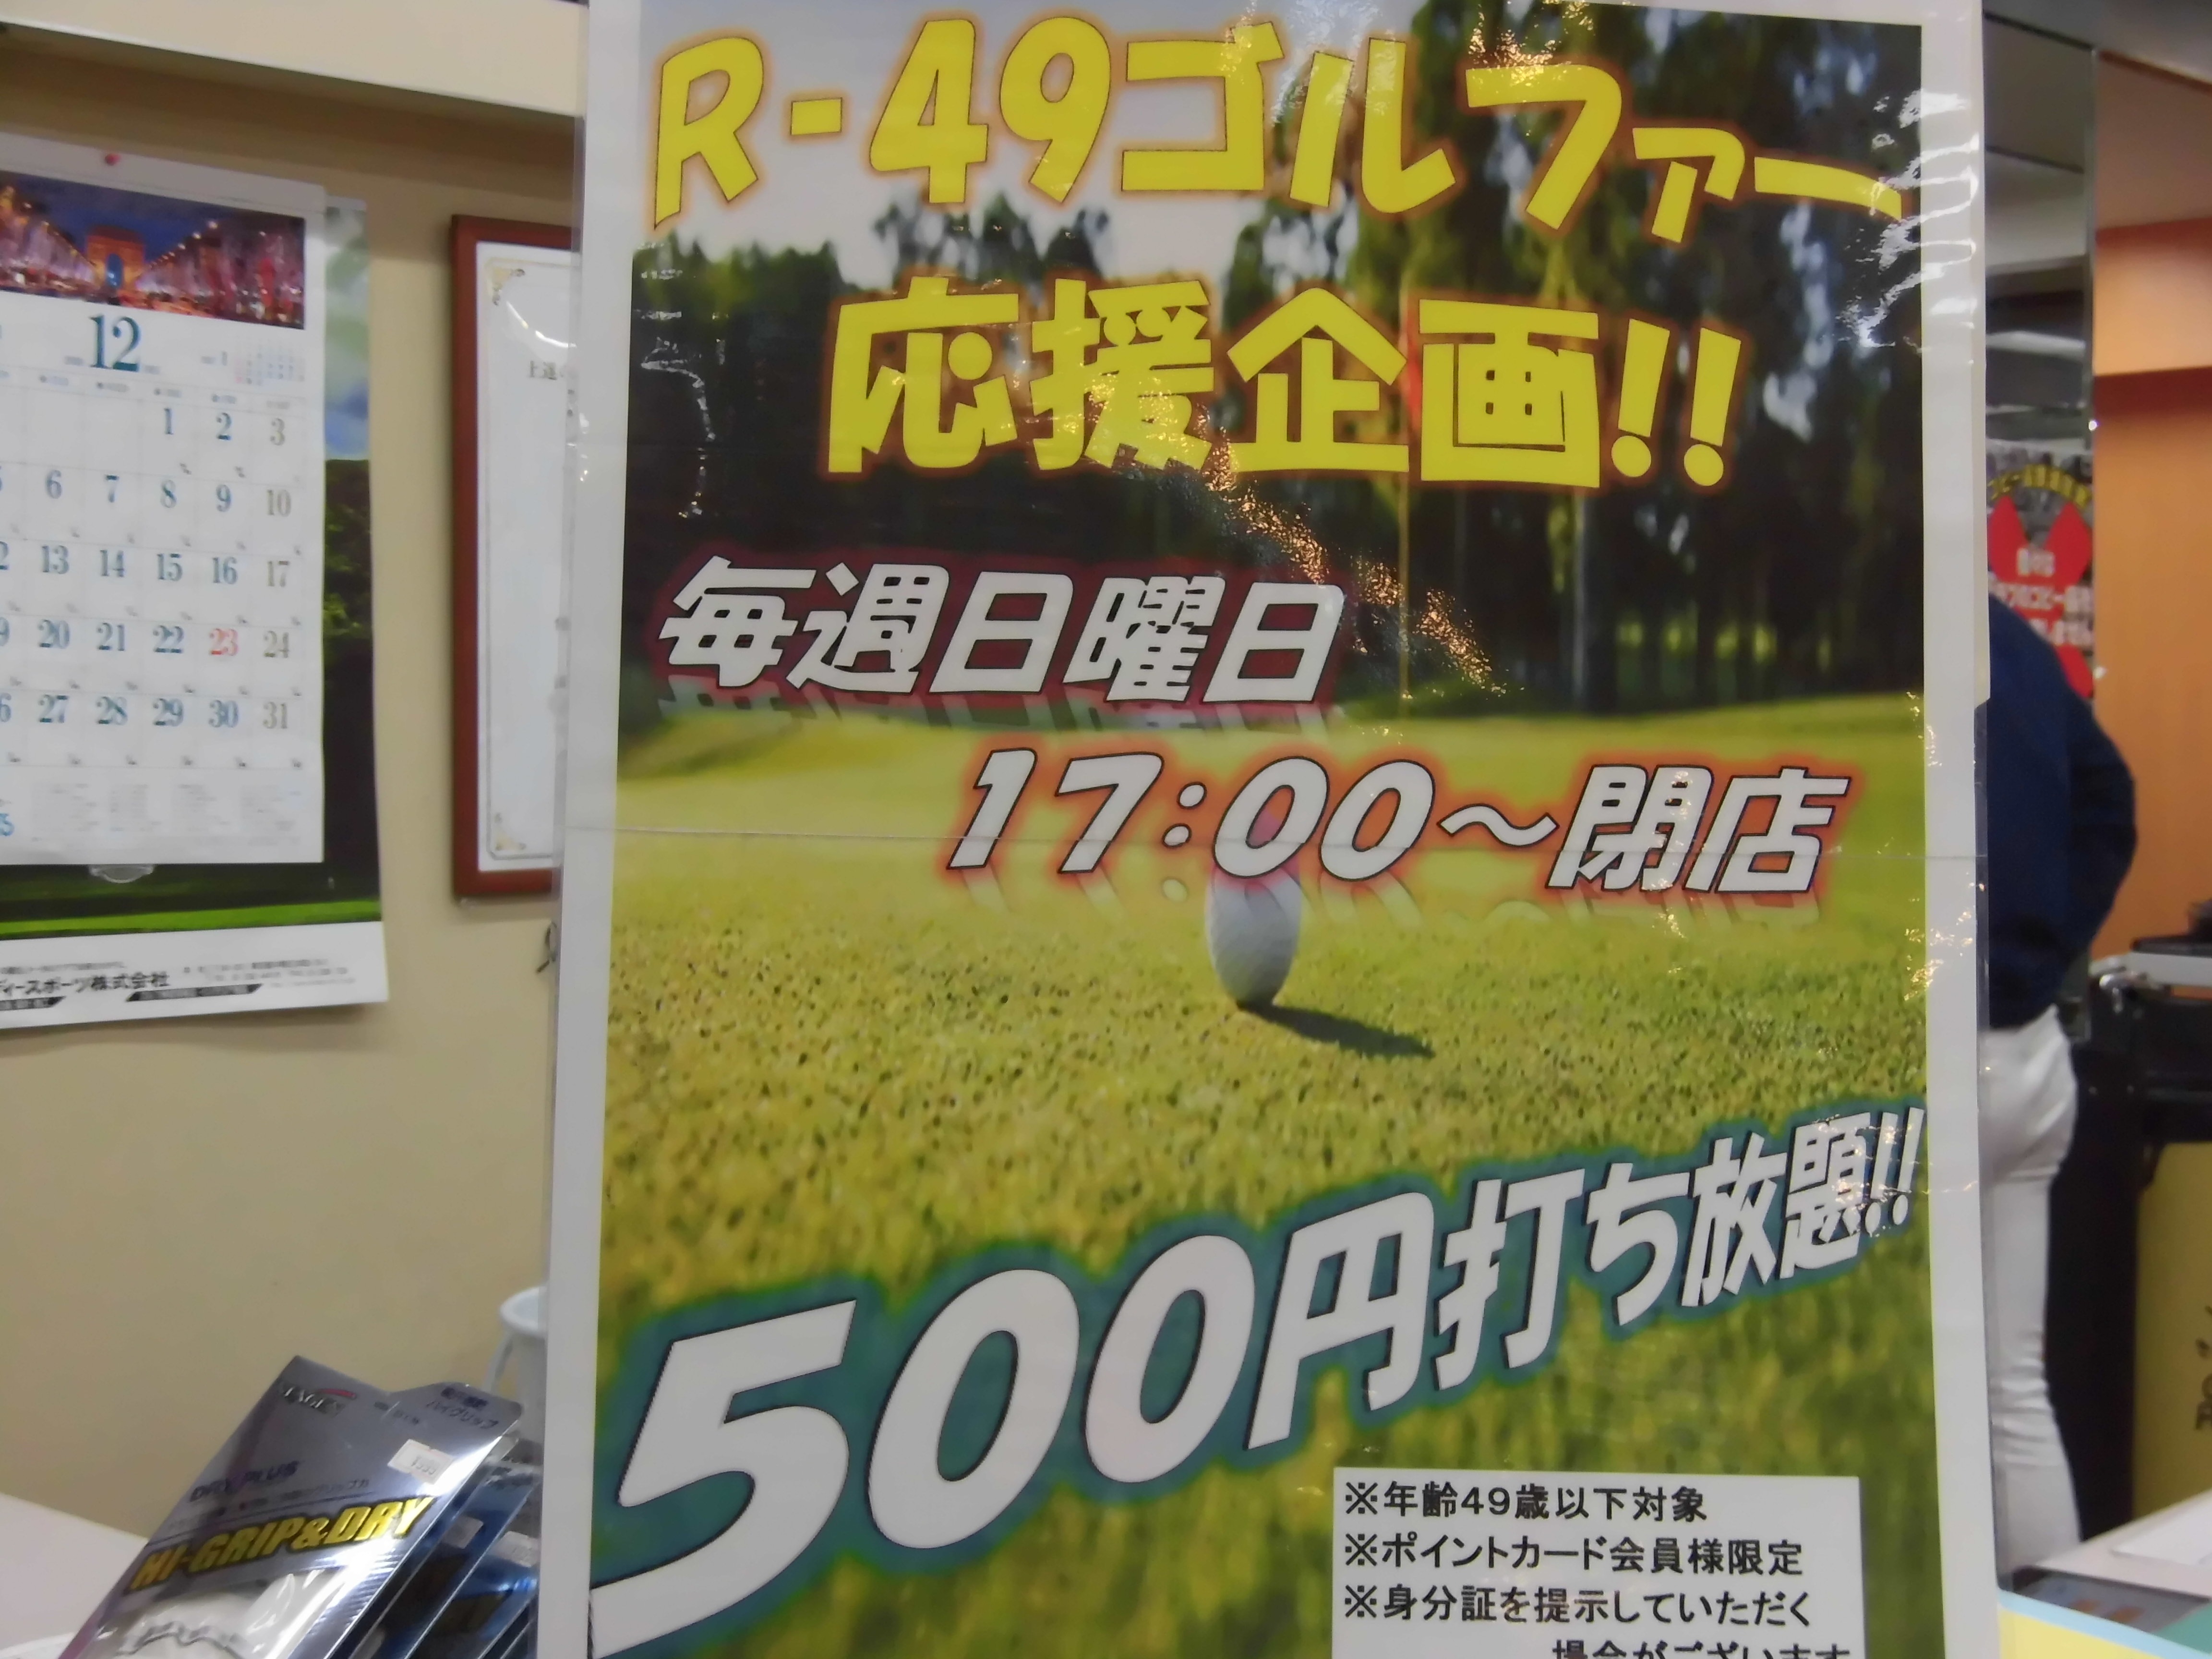 http://www.golfpartner.co.jp/960r/CIMG3300.JPG